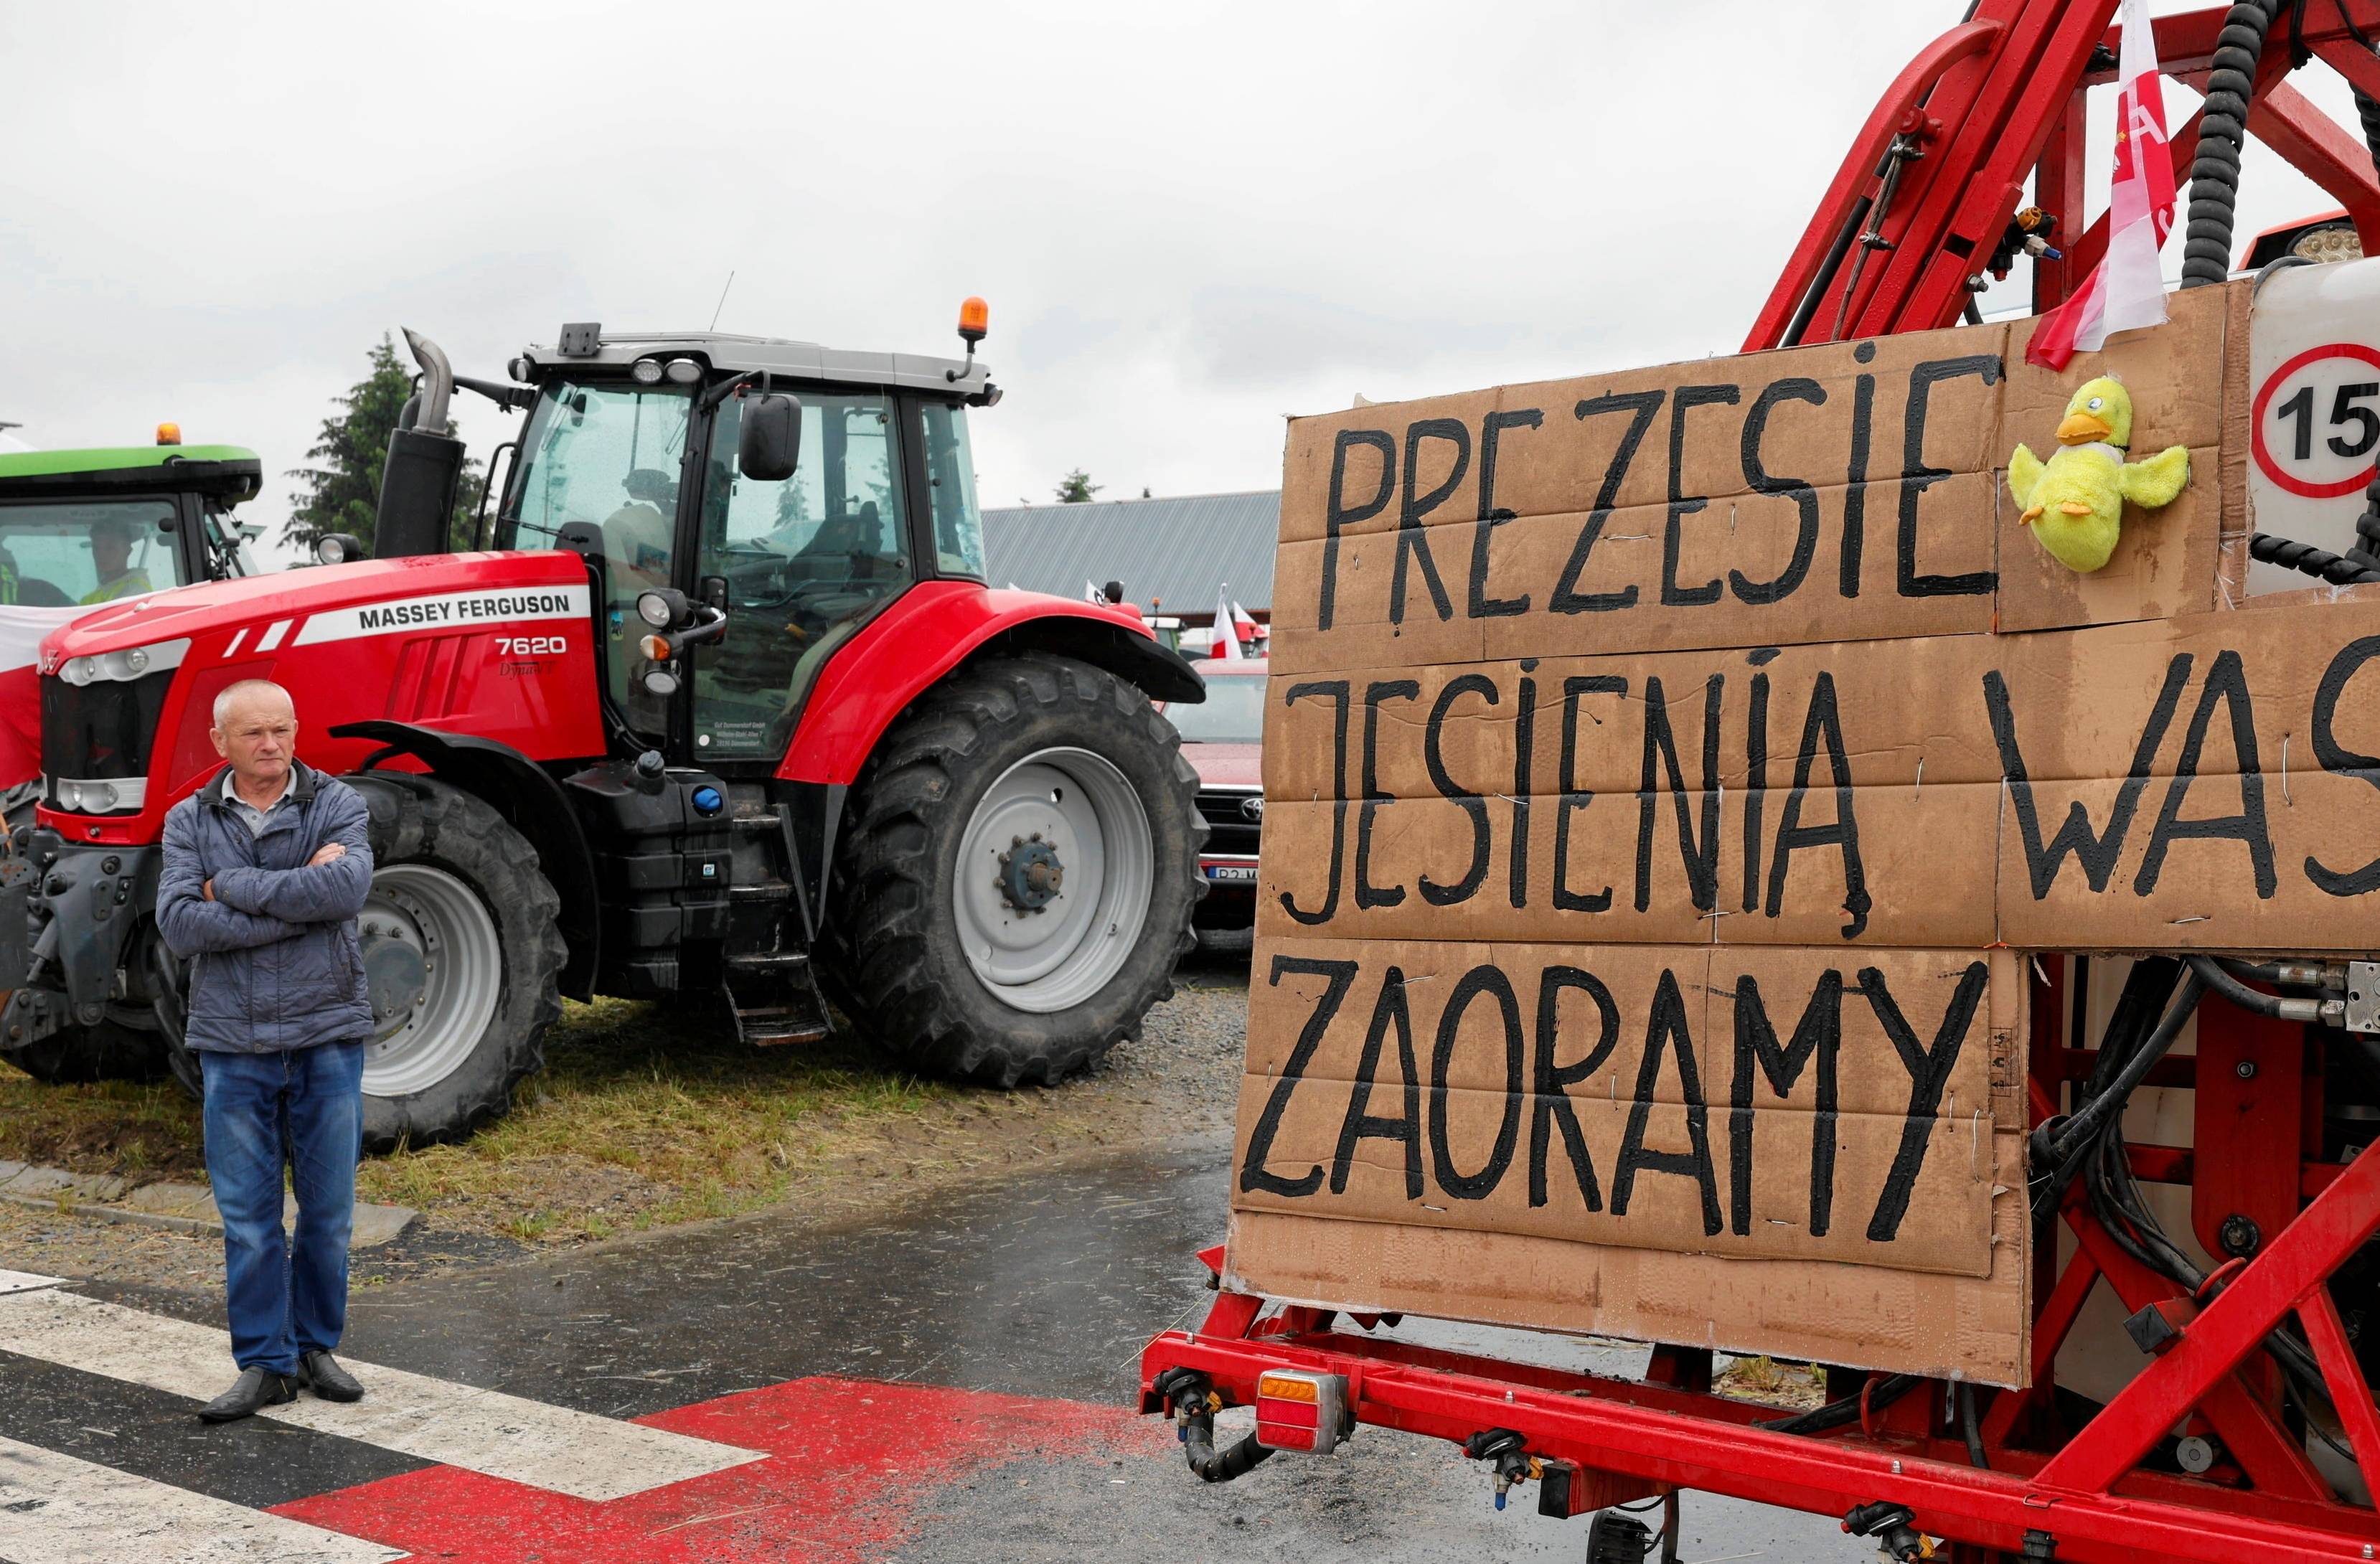 protestujący rolnicy blokują drogę z transparentem. Napis: Prezesie, jesienią was zaoramy.